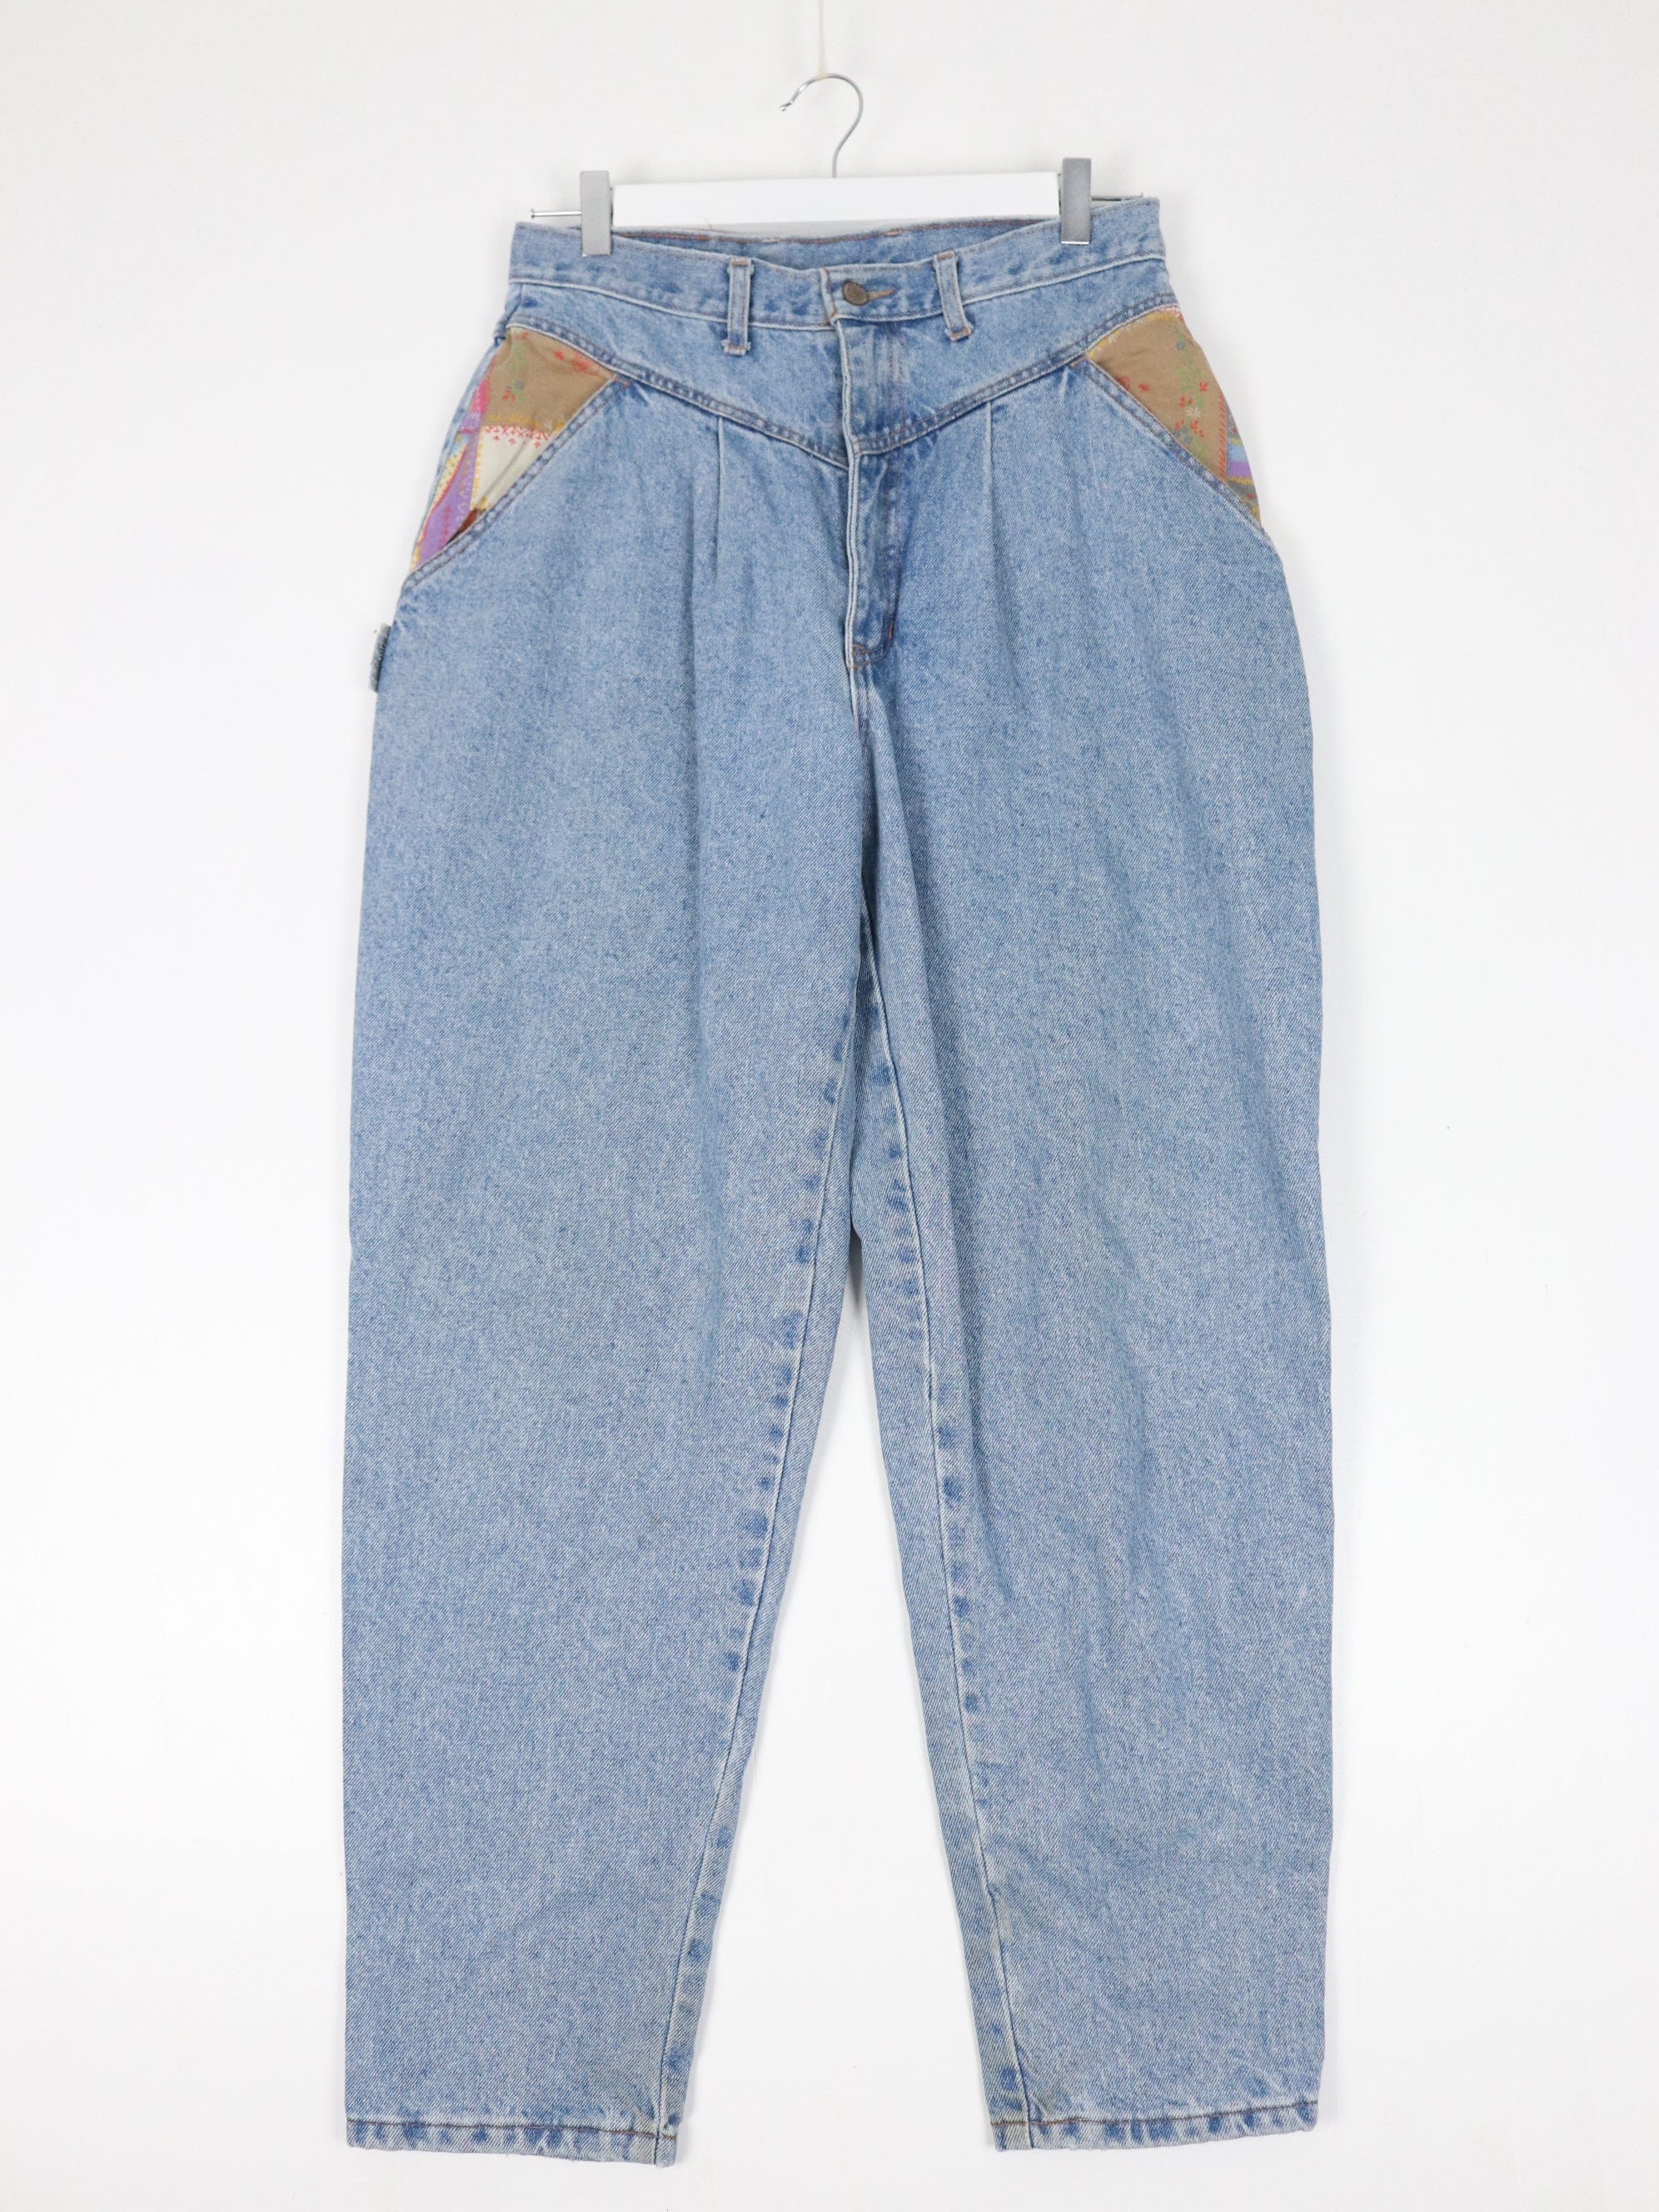 VIntage Hollywood Pants Womens 12 Blue Denim Jeans High Waisted – Proper  Vintage